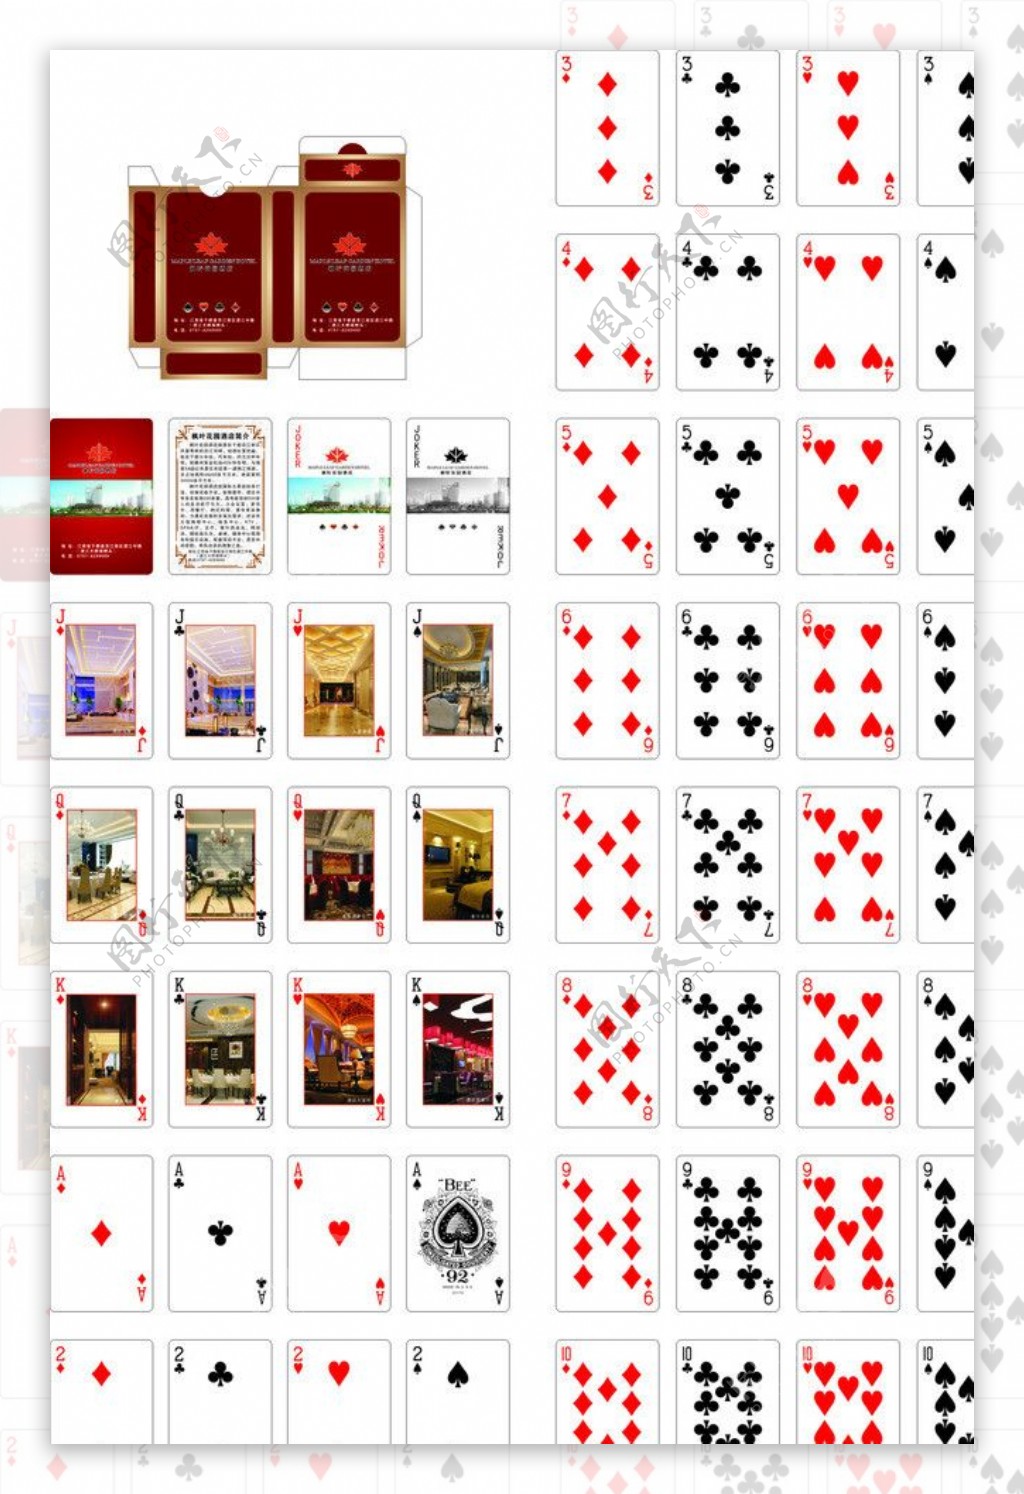 枫叶花园酒店扑克牌图片